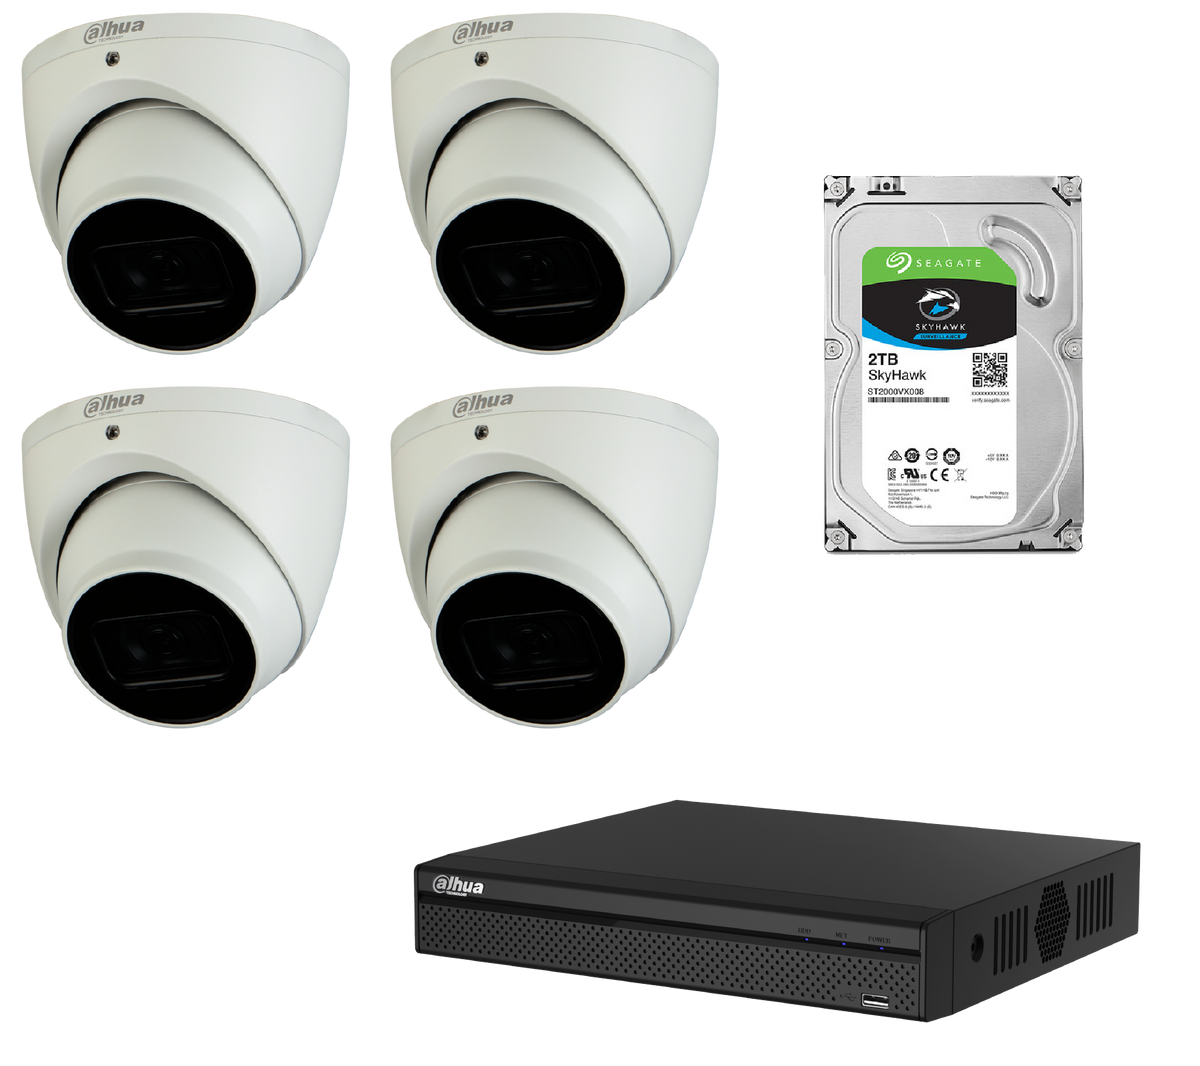 Dahua 4MP CCTV Kit: - 1 x NVR4104HS-P-4KS2  - 4 x HDW 2431 EMP-AS-S2  - 1 x 2TB HDD